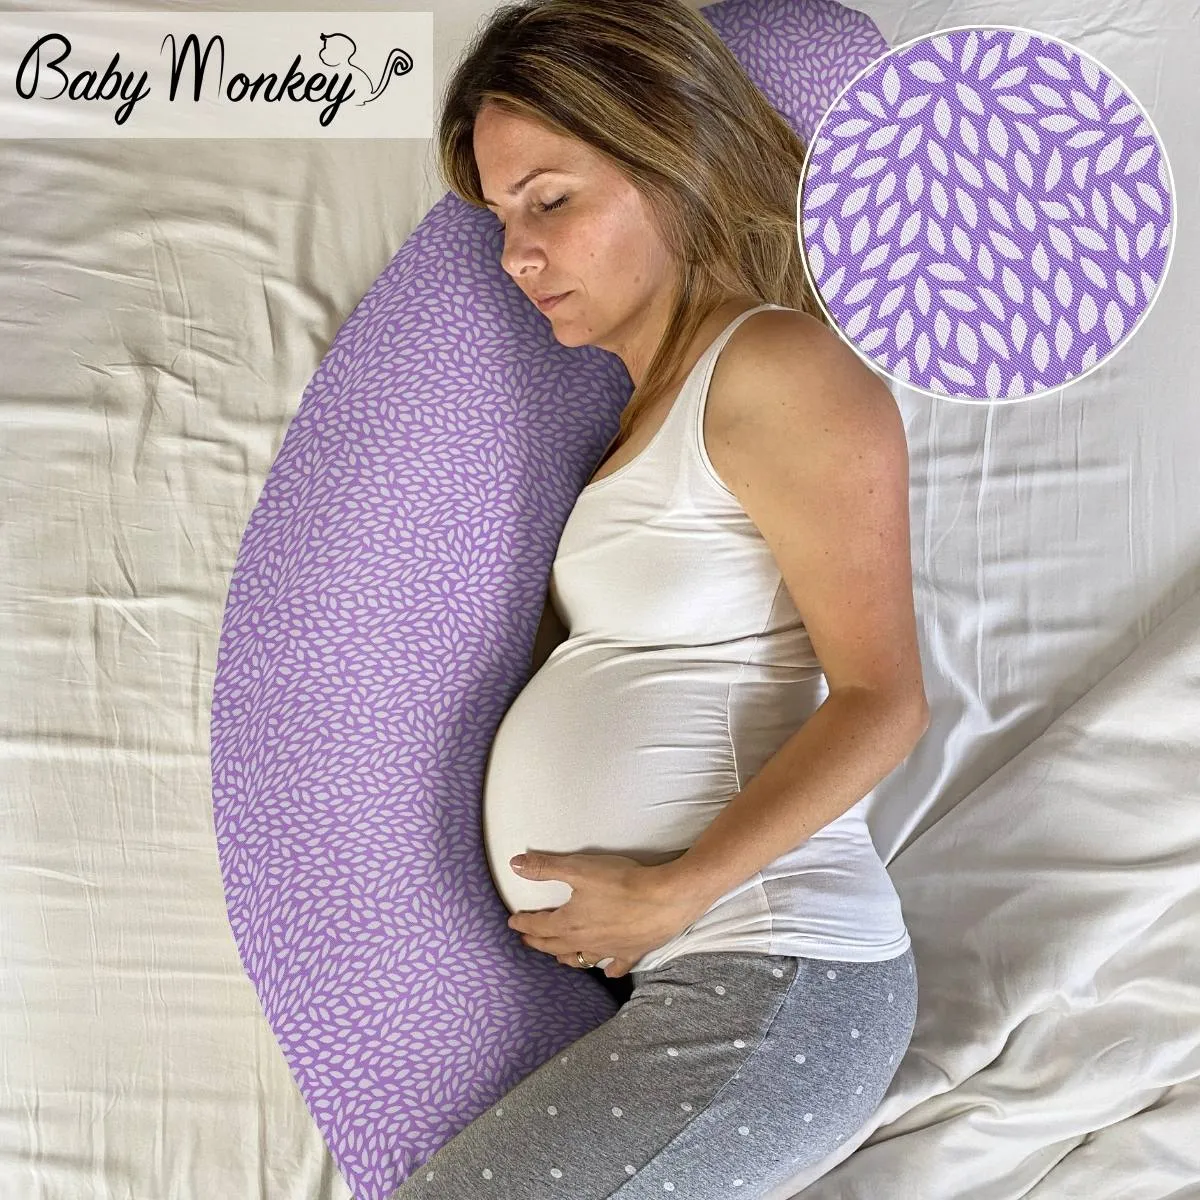 Cuscino gravidanza per dormire, allattare e mal di schiena Made in